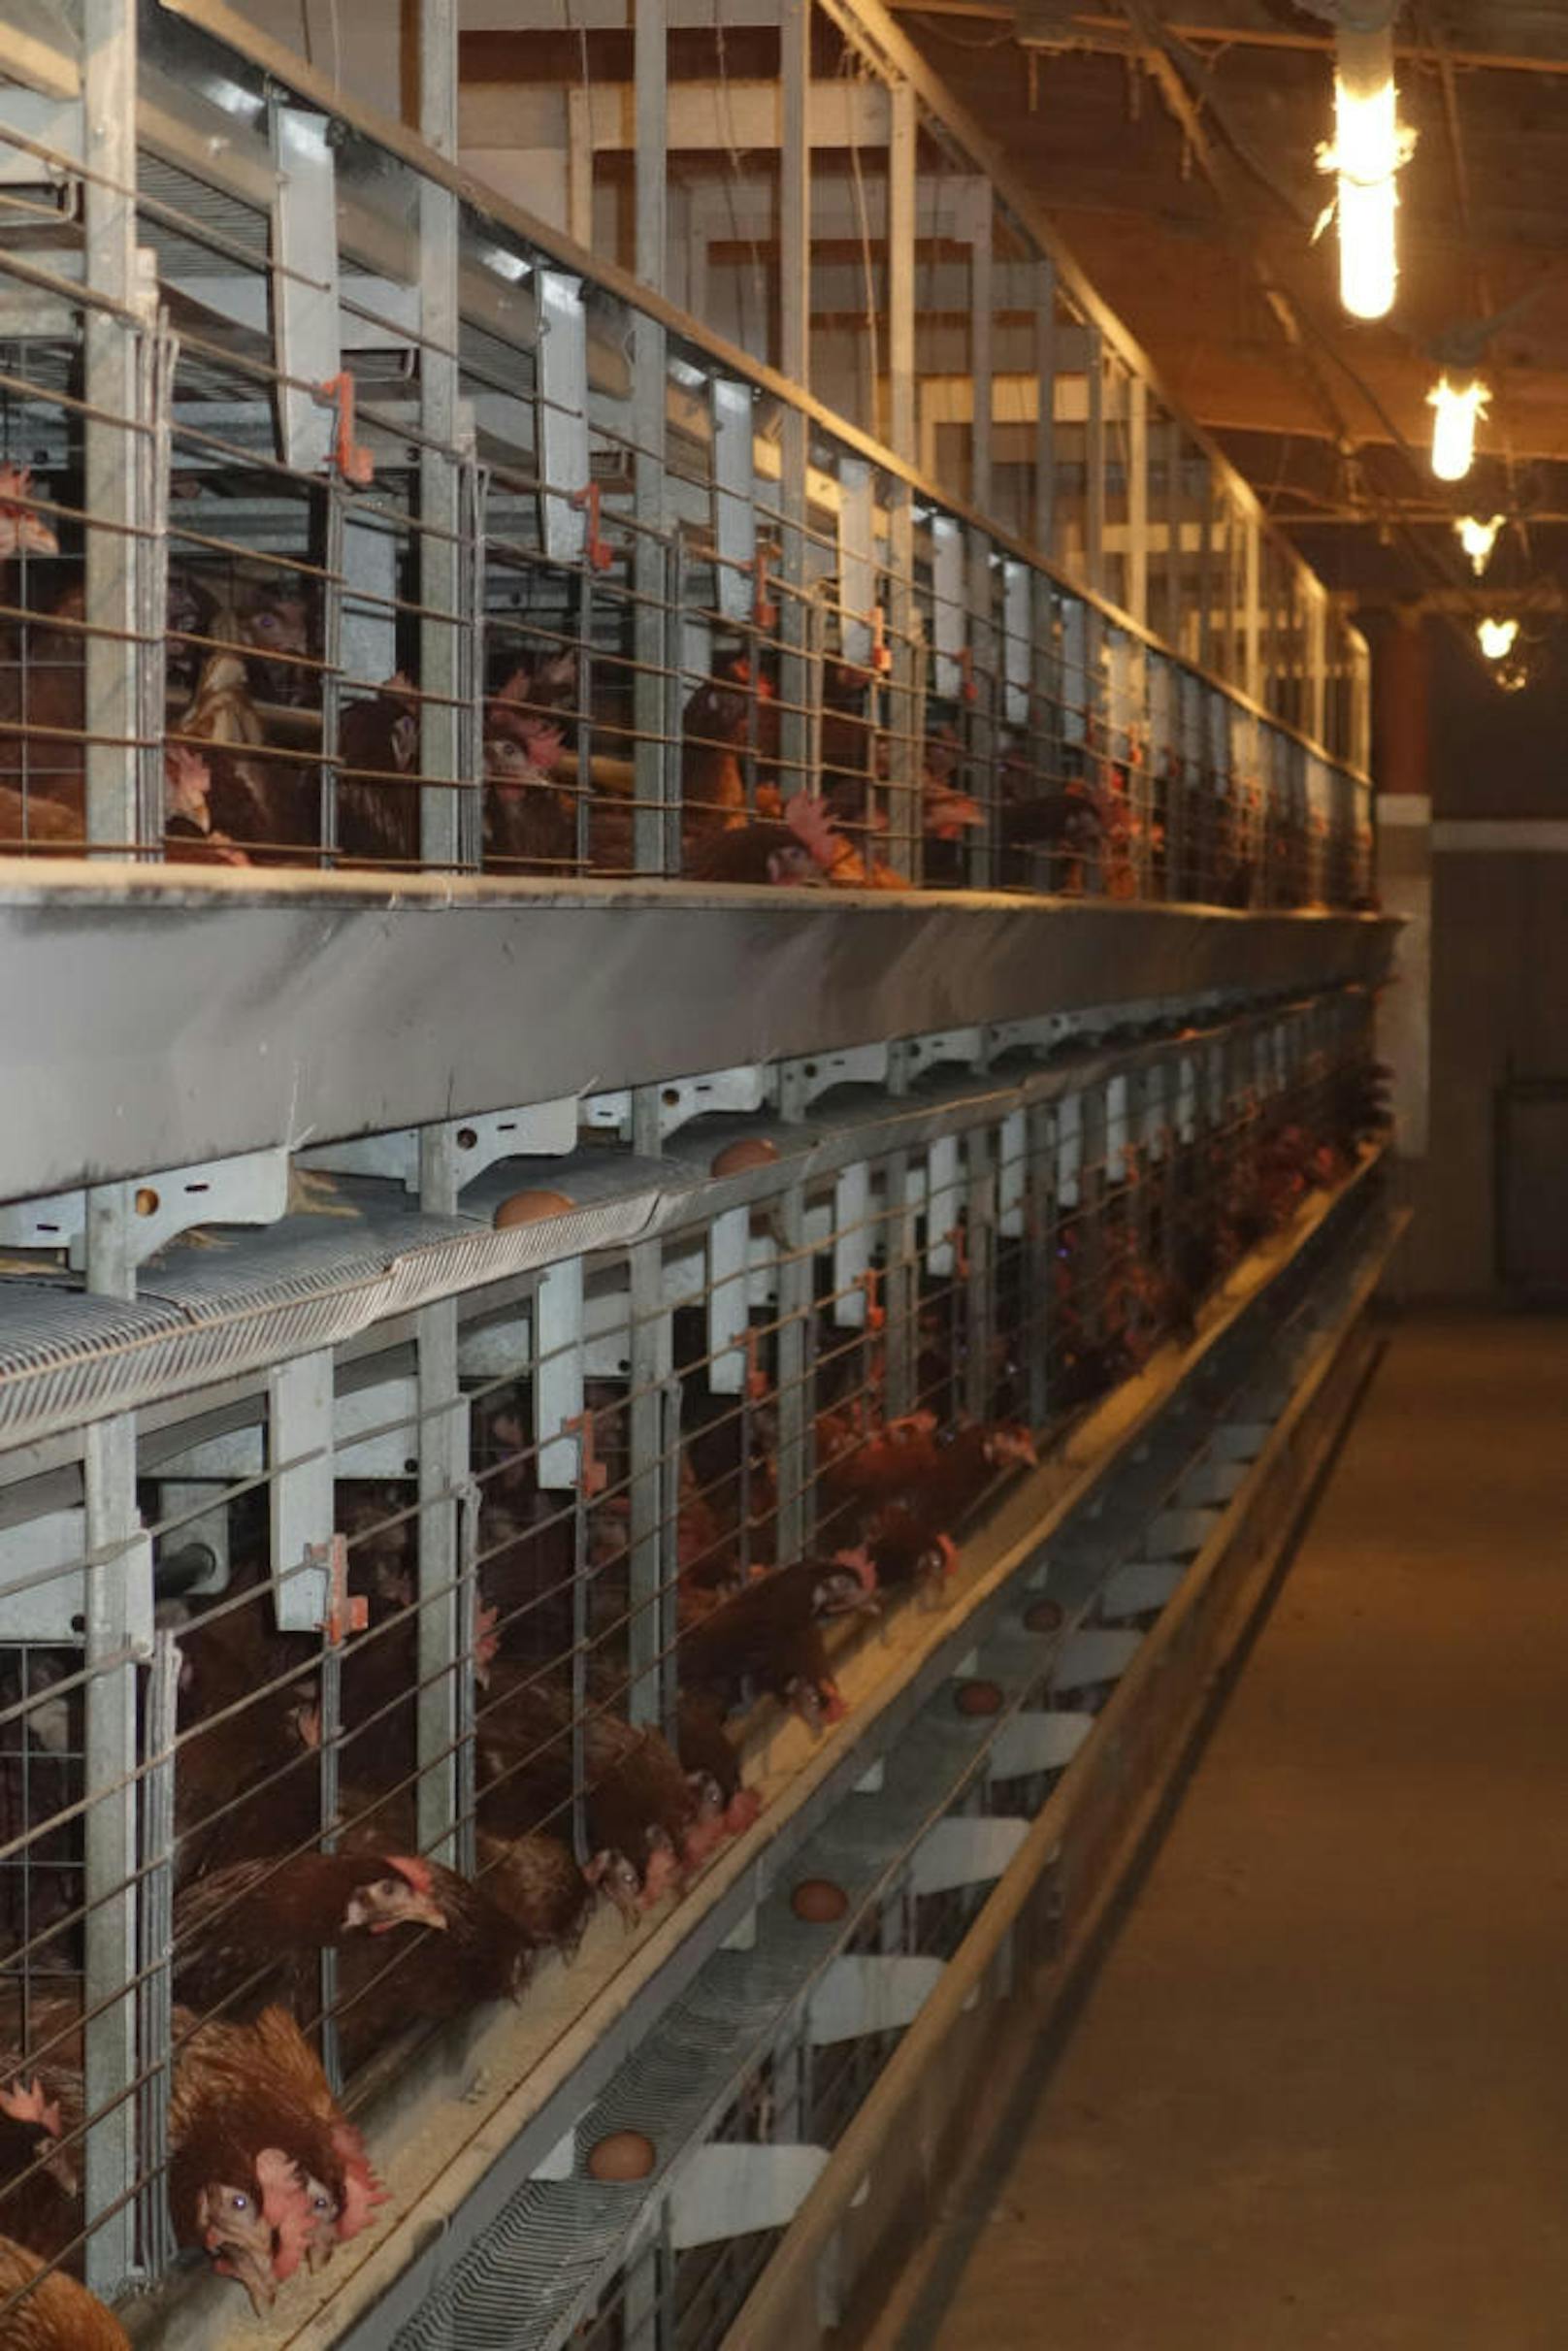 Diese Form der Hühnerhaltung ist in Österreich verboten. Der Verein gegen Tierfabriken erstattete Anzeige.